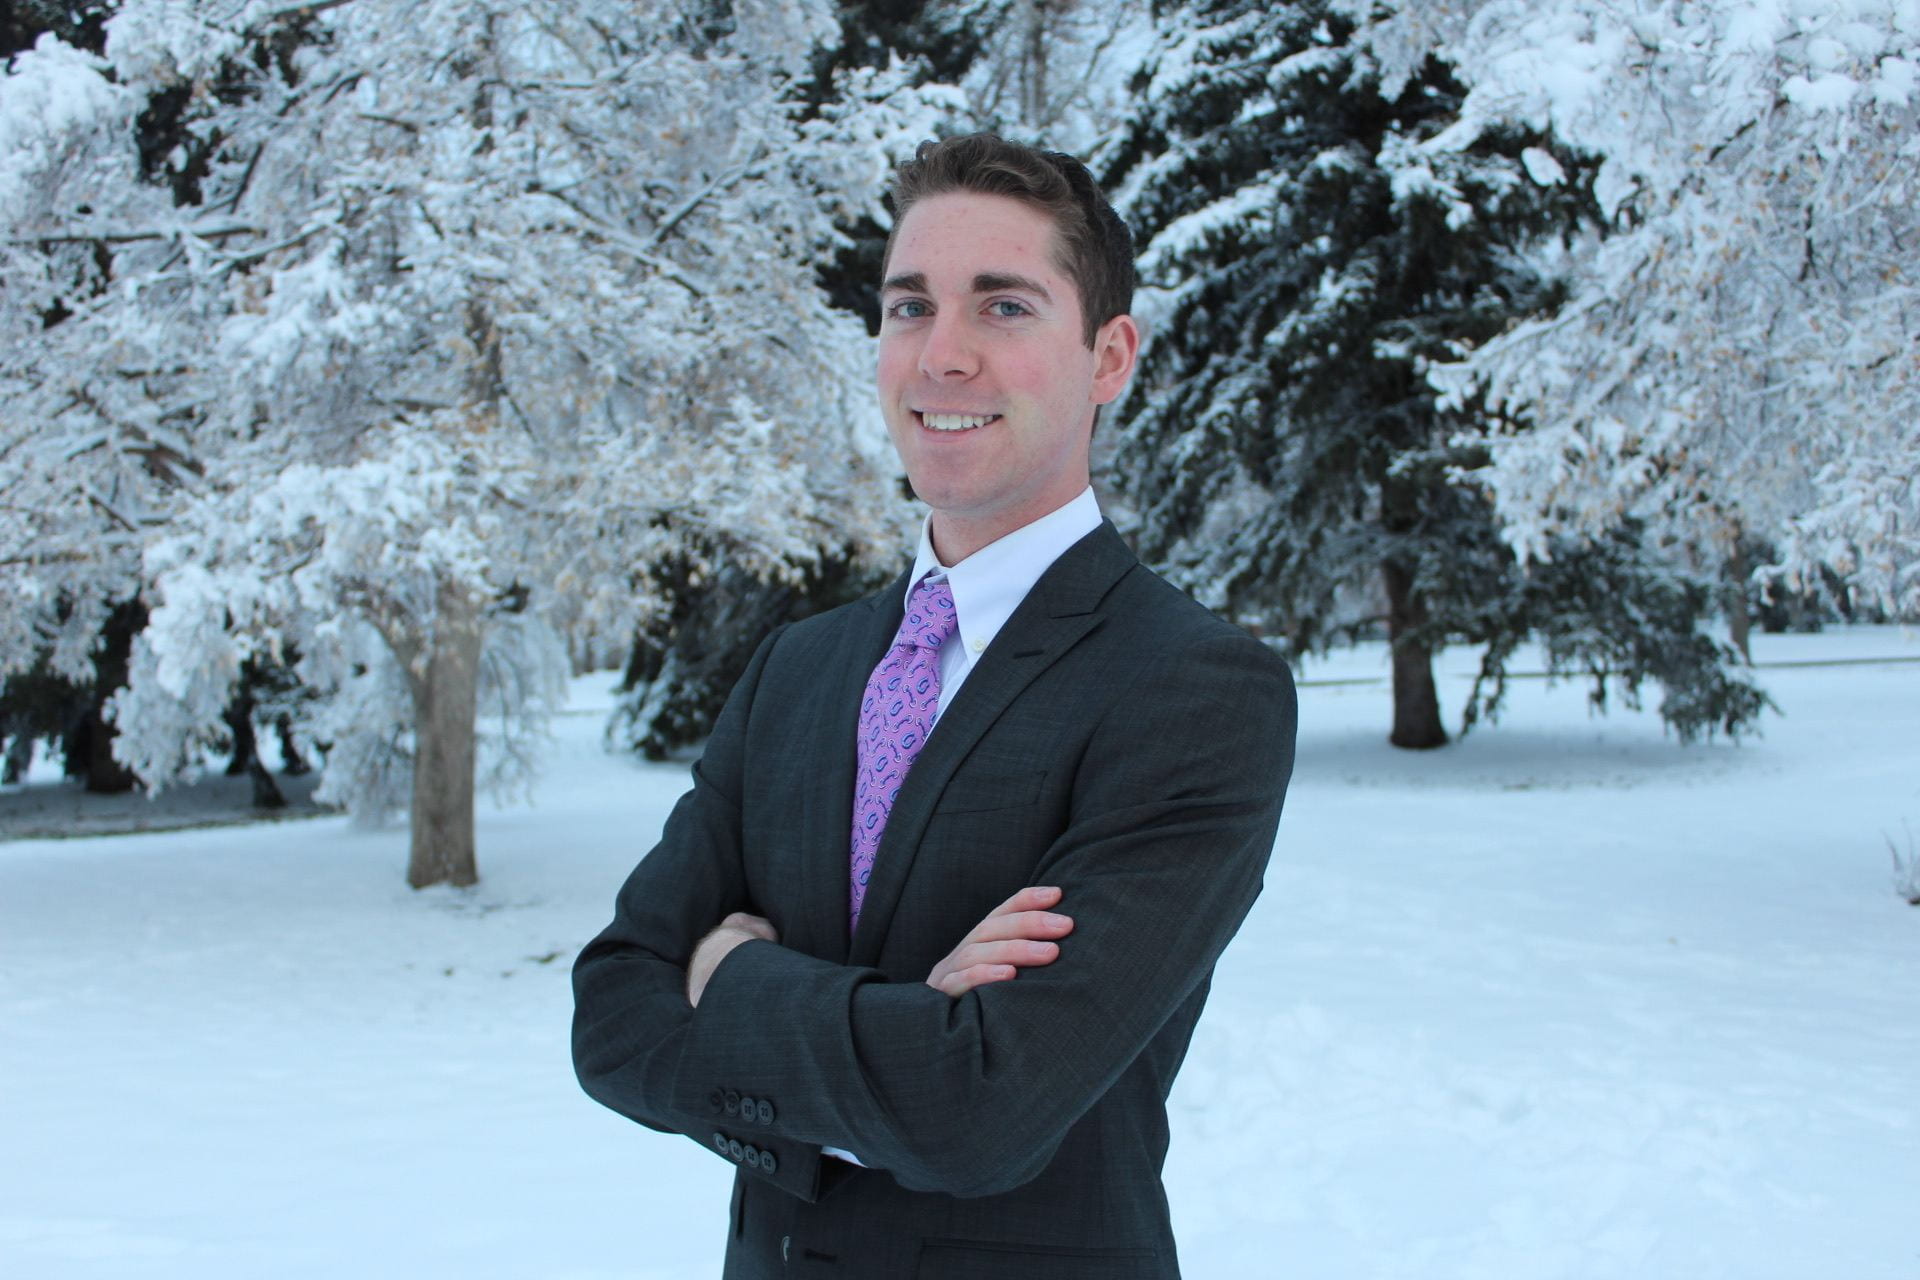 Tucker Hamilton in suit posing for portrait in a snowy field